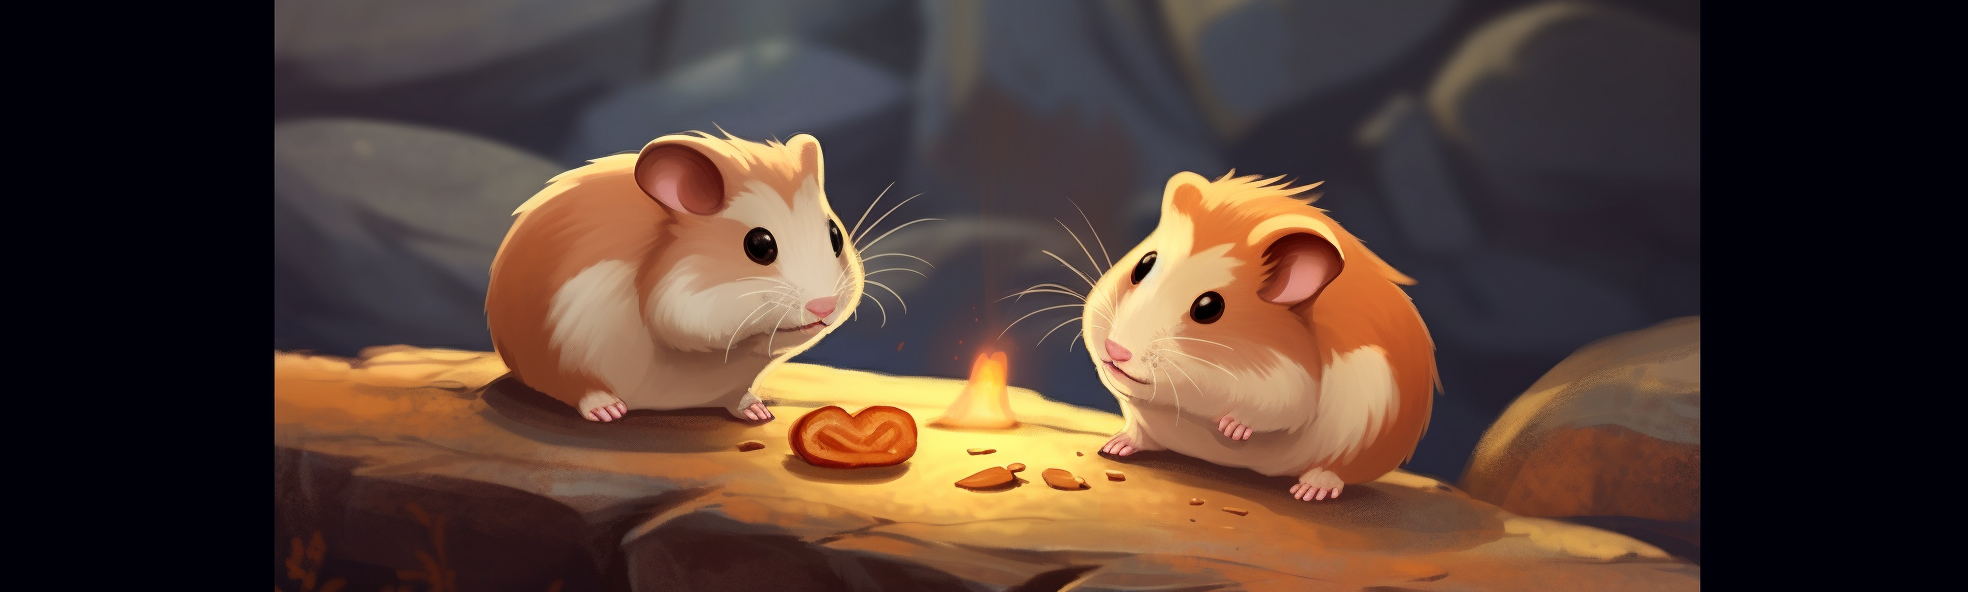 zwei hamster